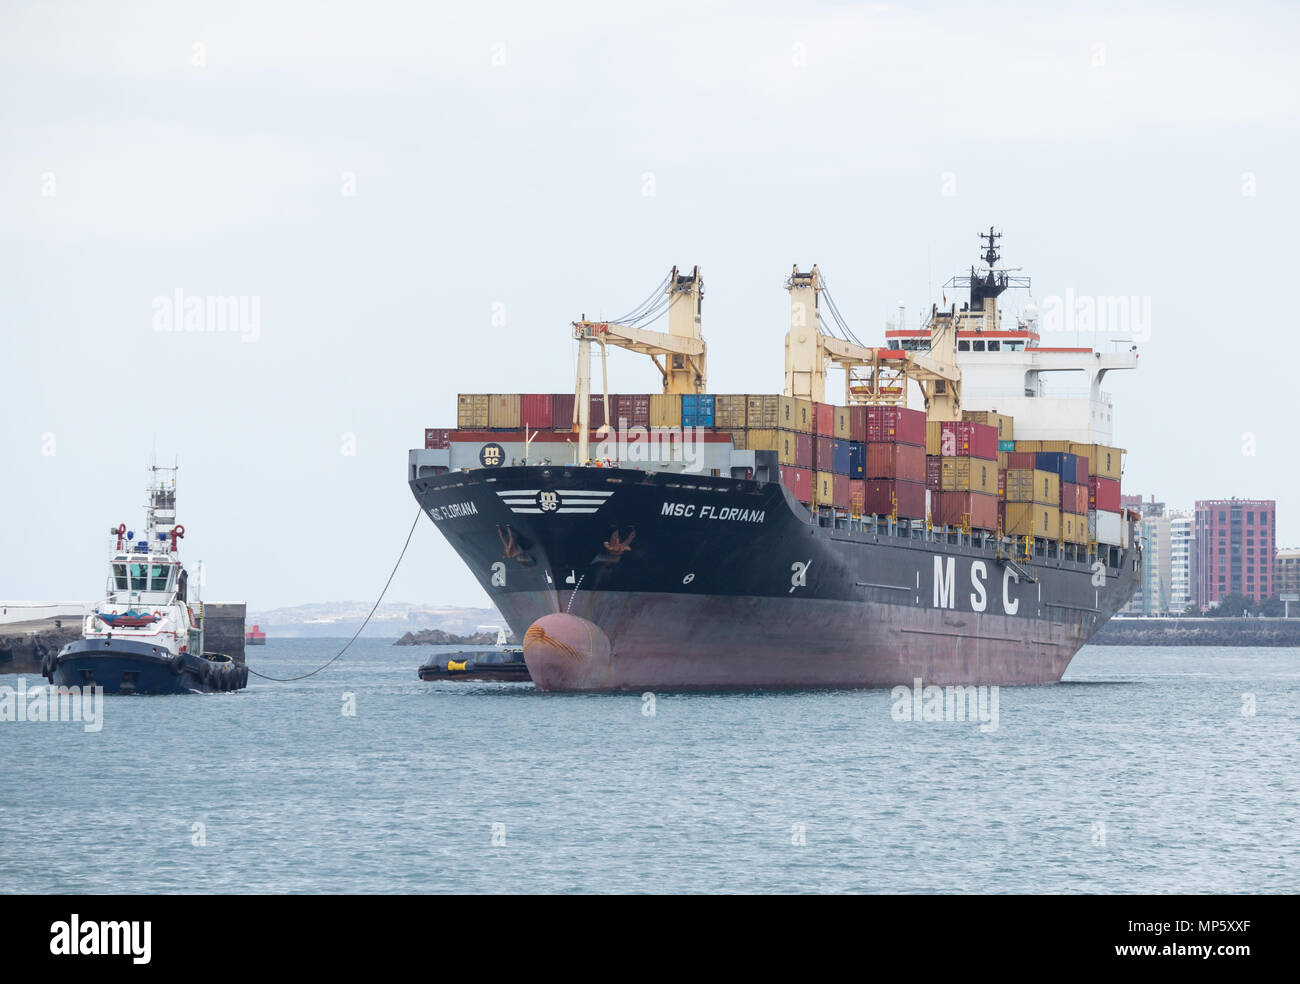 Rimorchiatore barche guidare MSC Floriana nave container nel porto di Las Palmas de Gran Canaria Isole Canarie Spagna Foto Stock